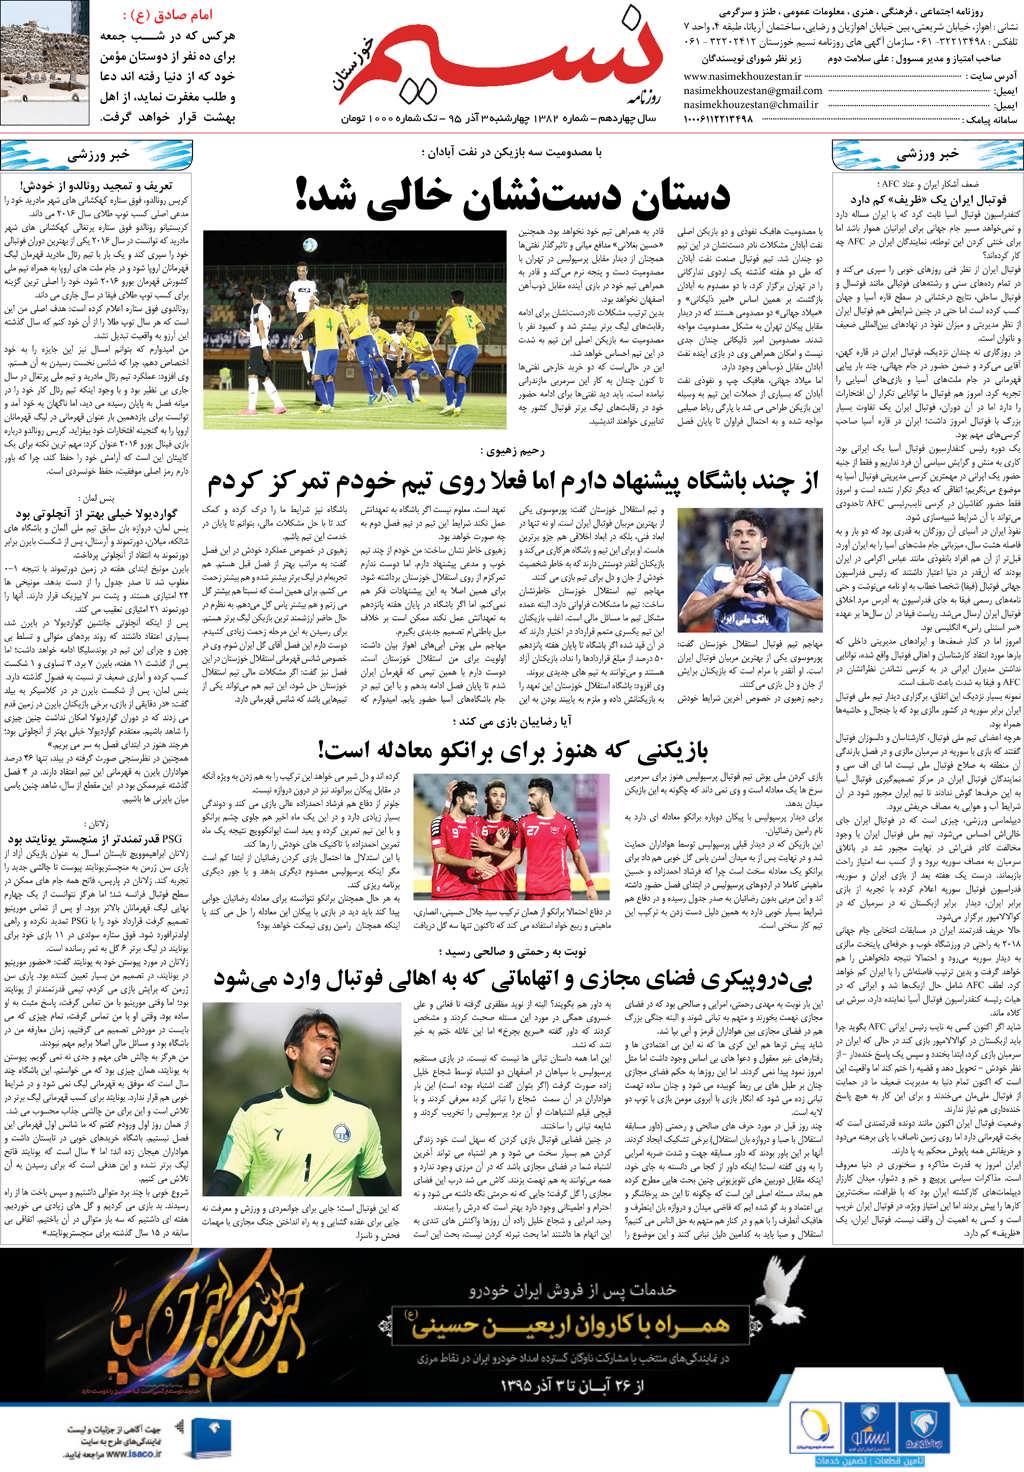 صفحه آخر روزنامه نسیم شماره 1382